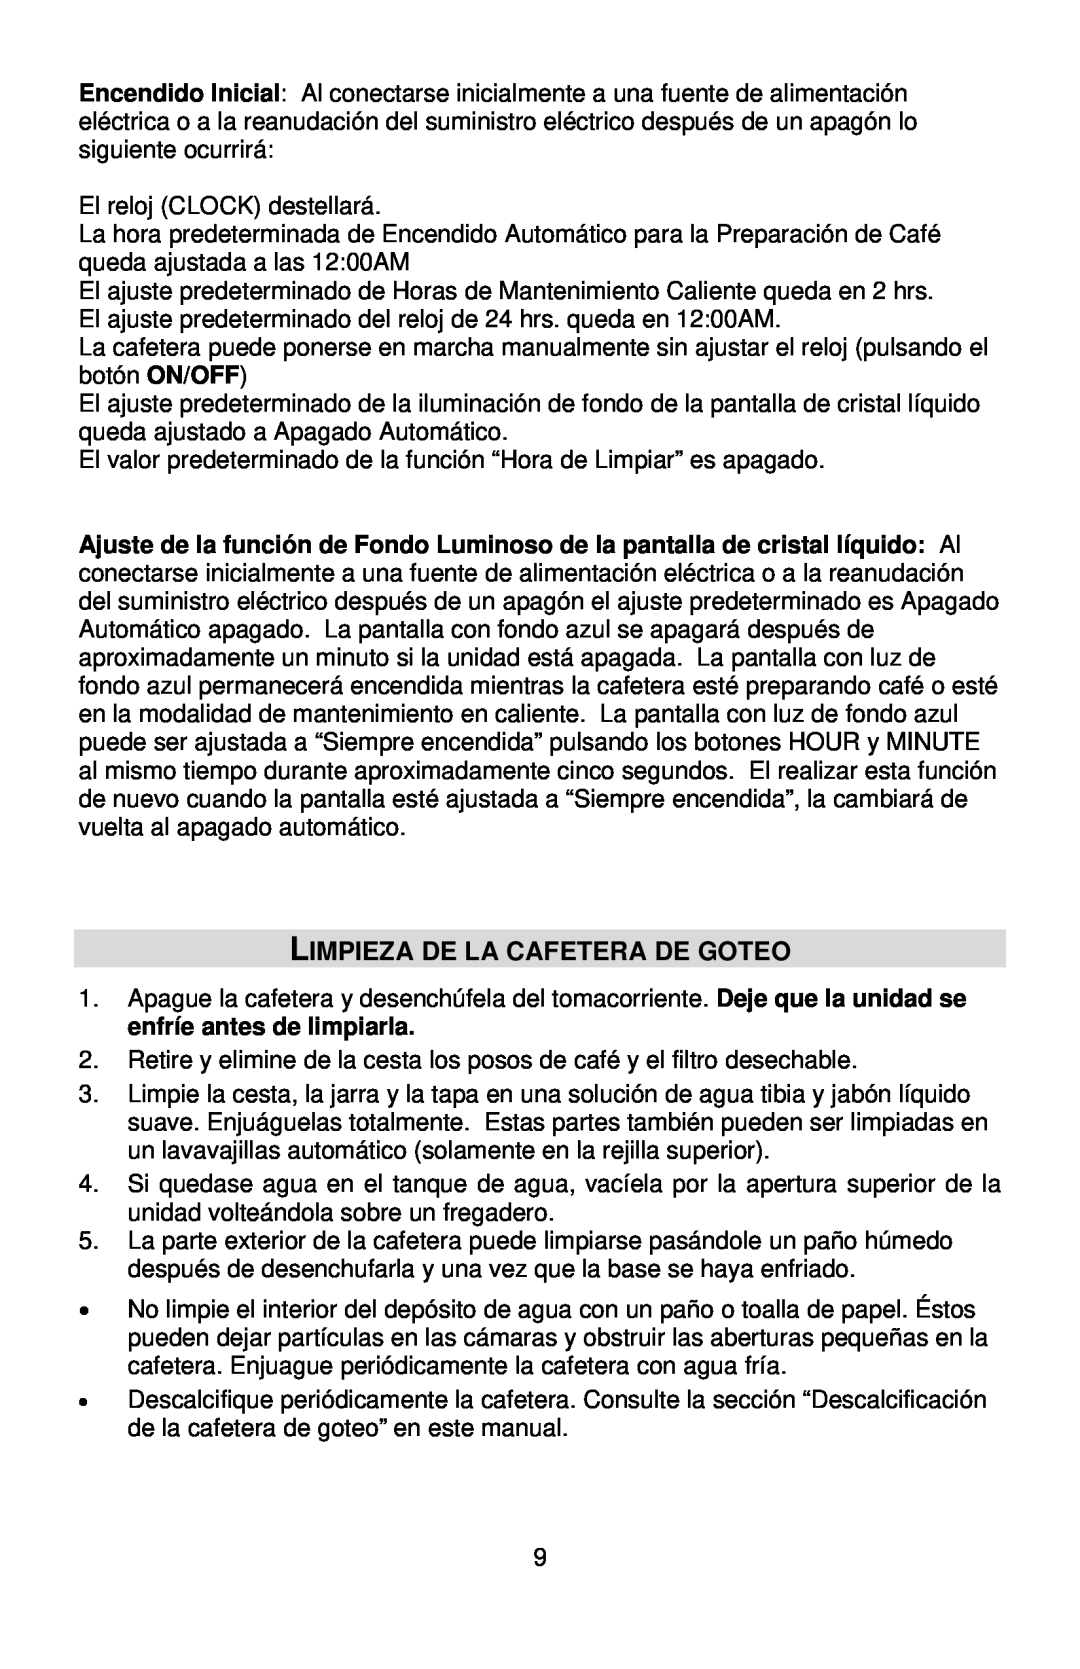 West Bend QUIKSERVE instruction manual Limpieza De La Cafetera De Goteo 